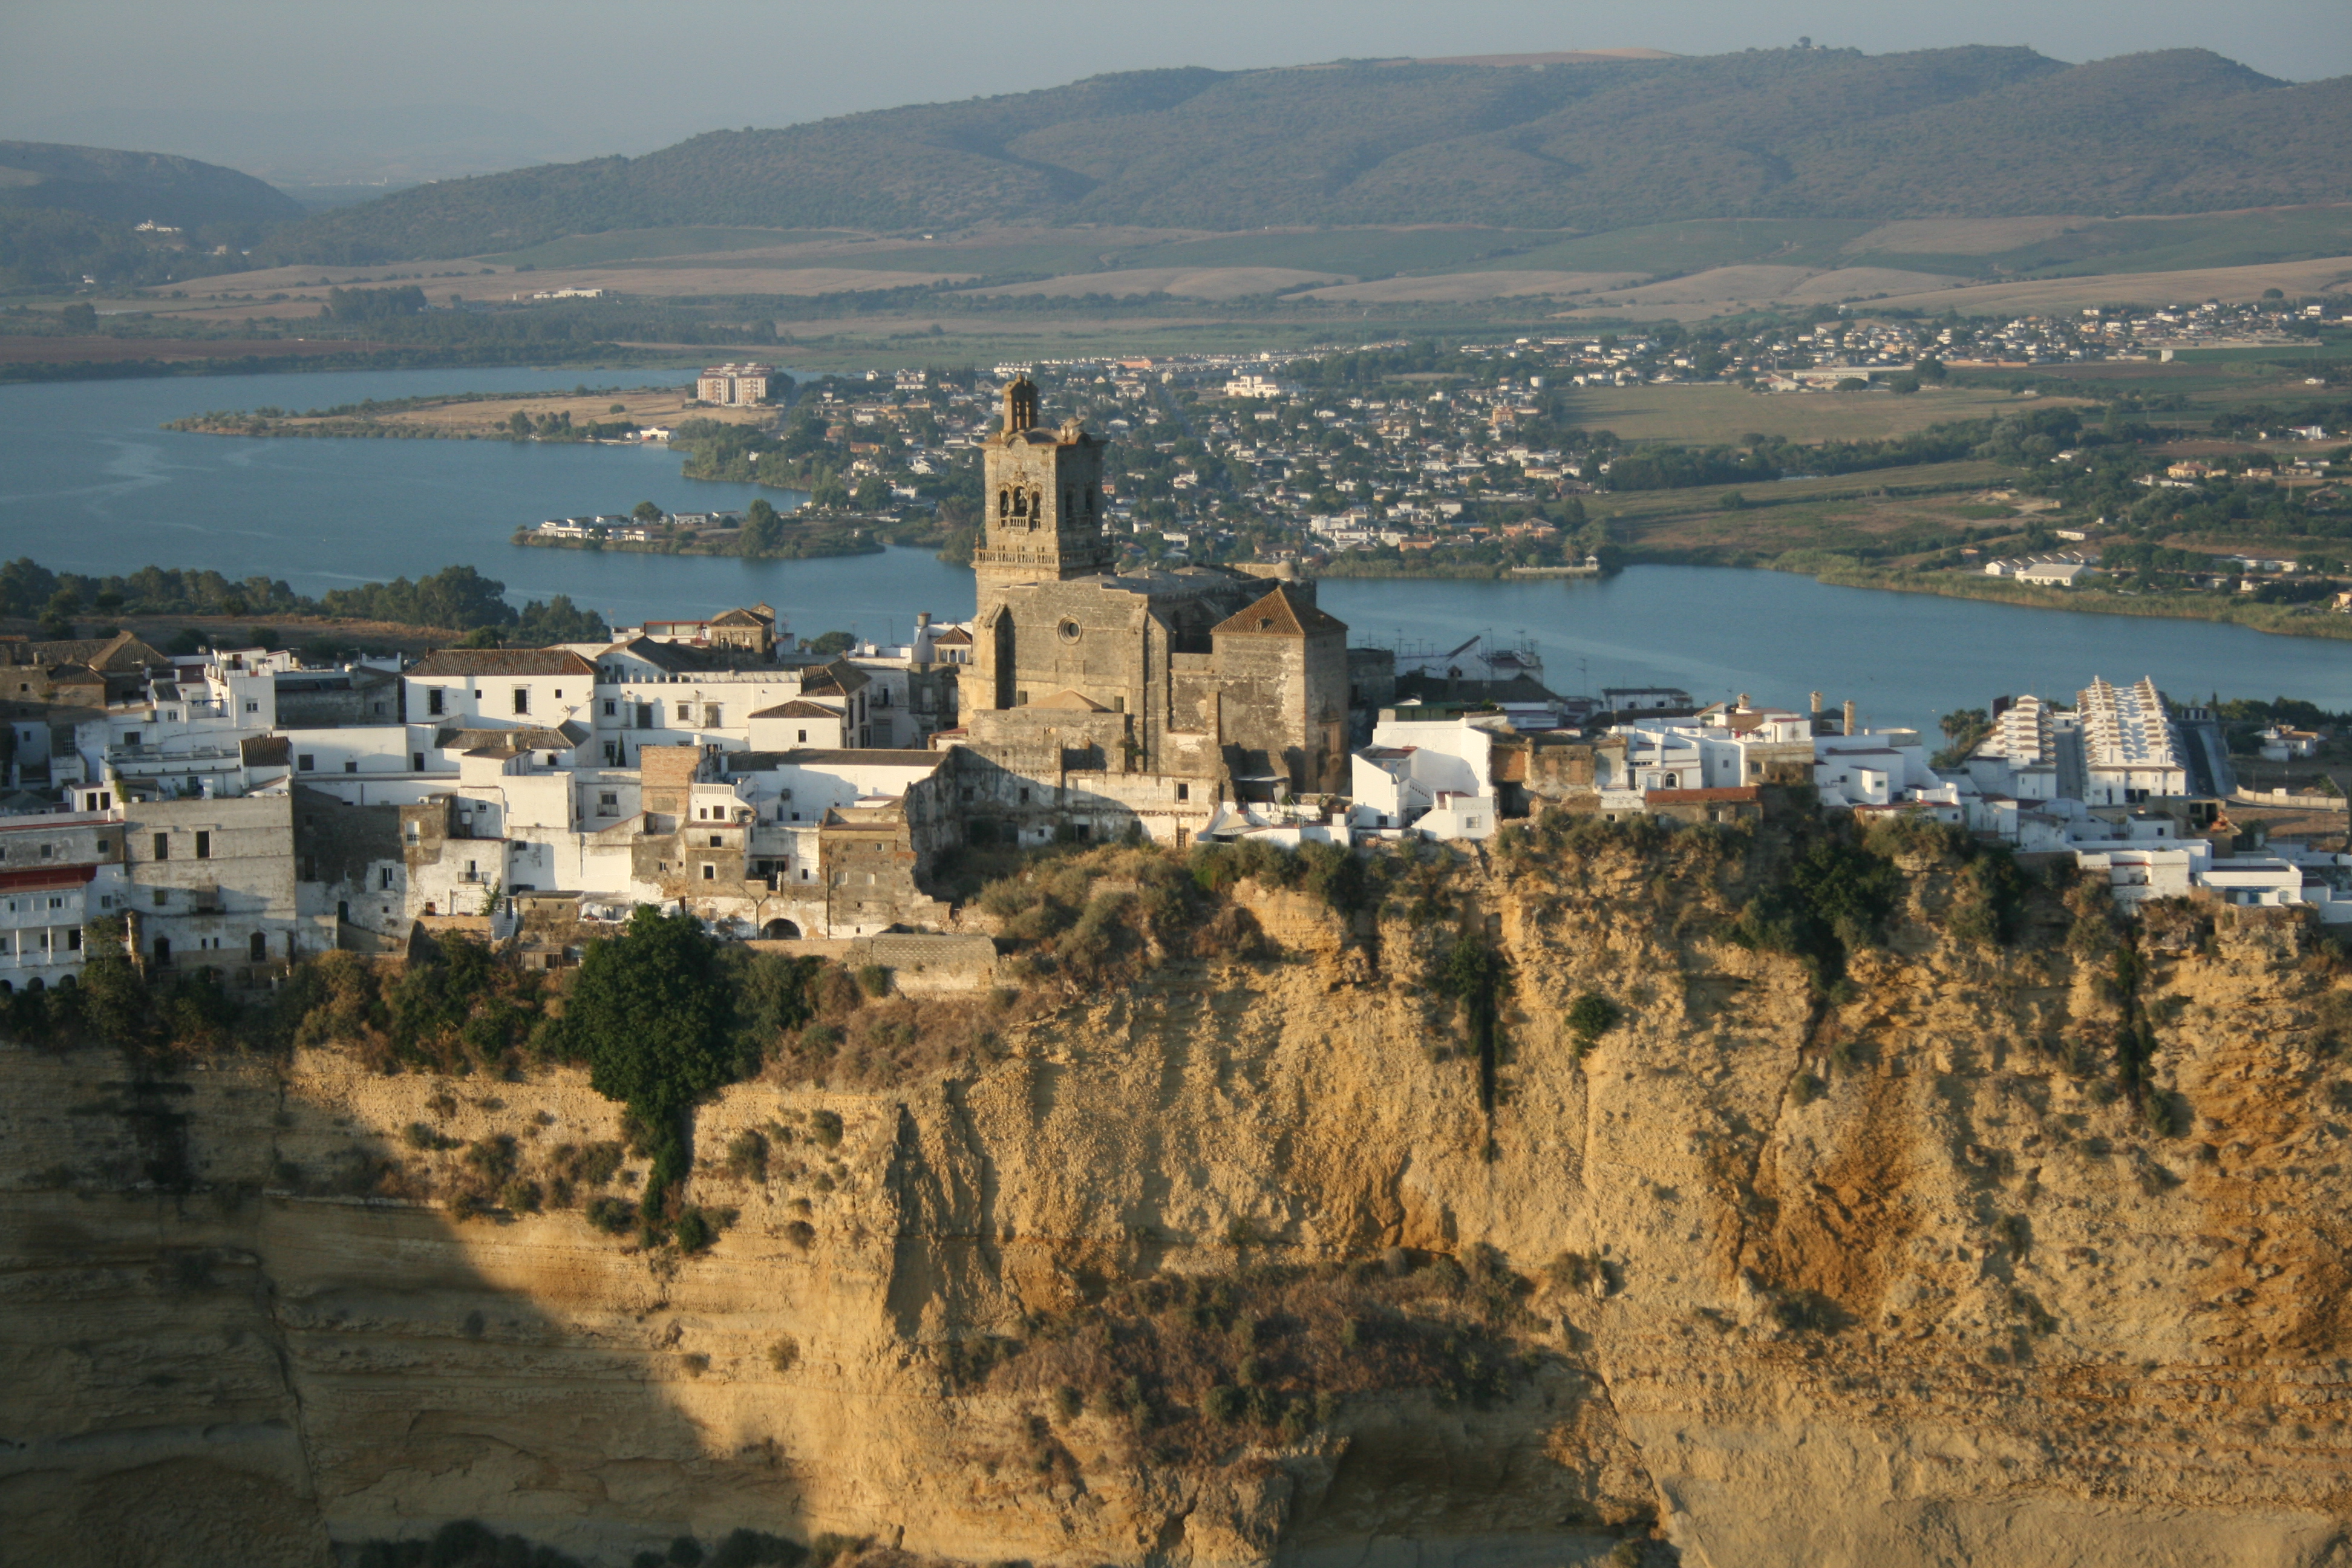 Impulsa el turismo ecológico en Cádiz con un viaje sostenible y encantador